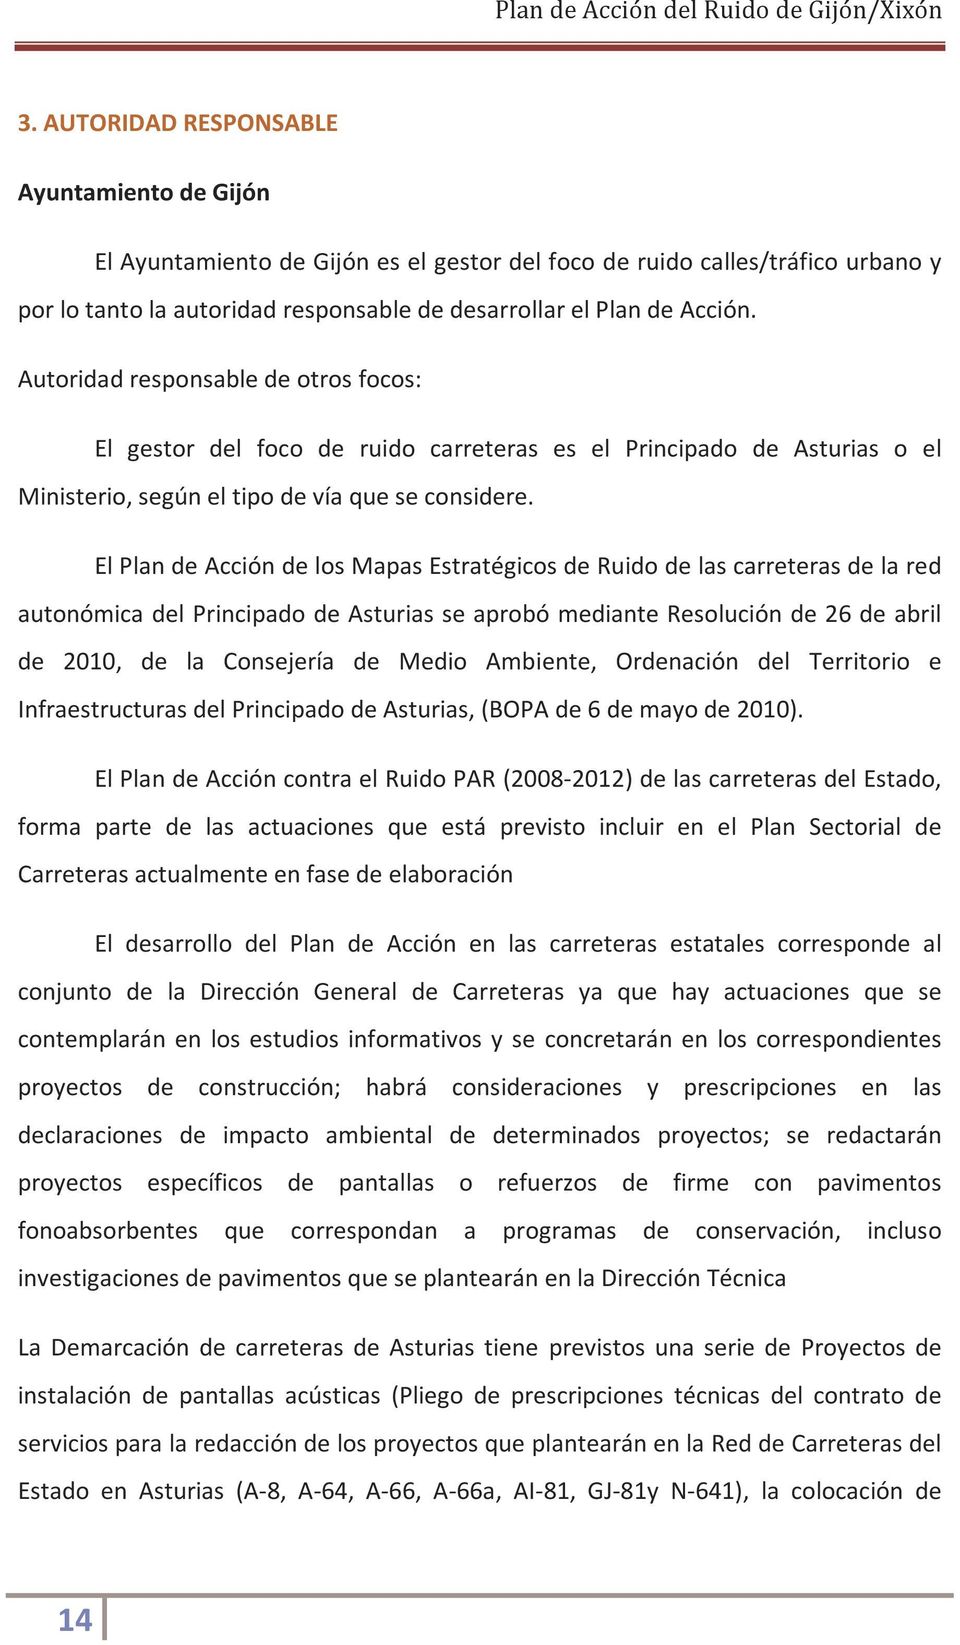 El Plan de Acción de los Mapas Estratégicos de Ruido de las carreteras de la red autonómica del Principado de Asturias se aprobó mediante Resolución de 26 de abril de 2010, de la Consejería de Medio